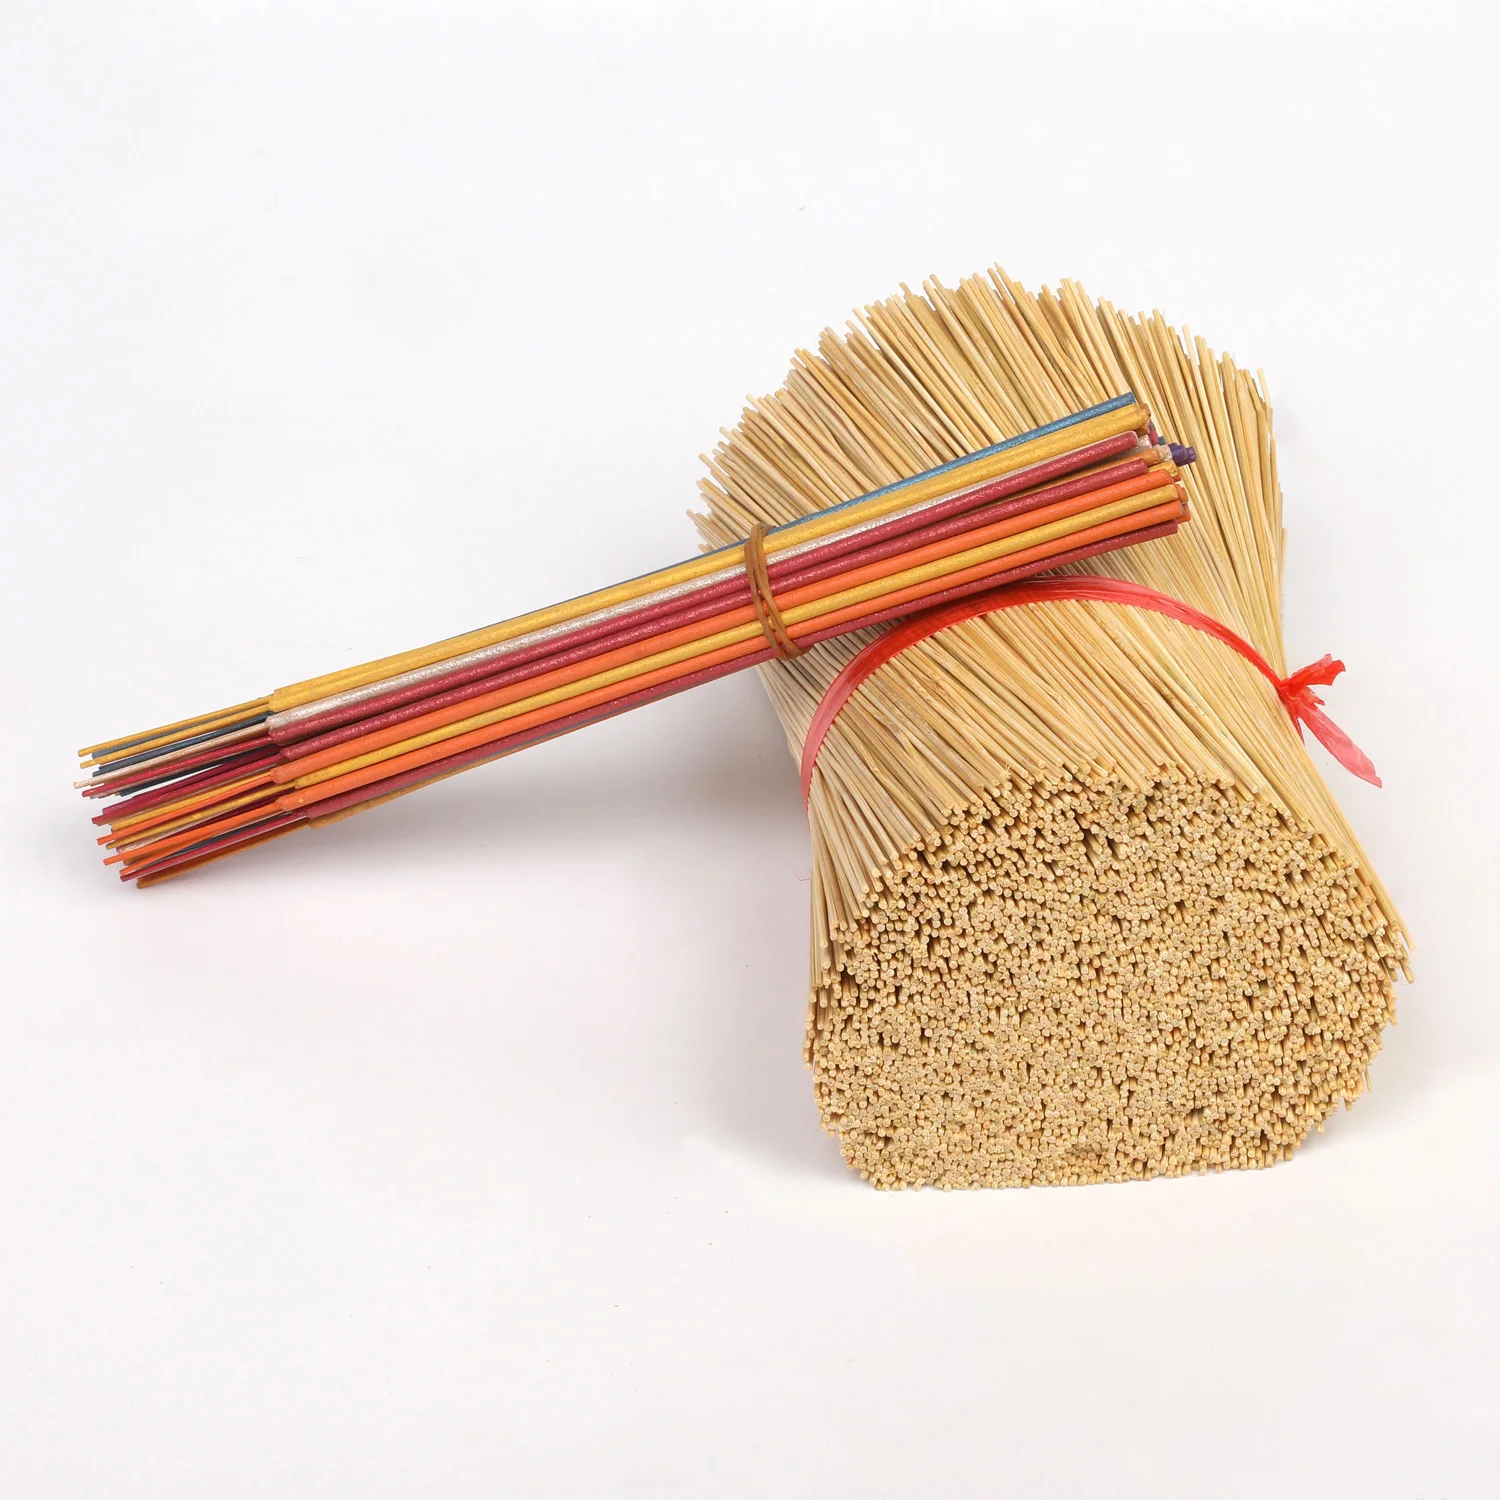 Оптовая продажа от производителя, бамбуковая палочка лучшего качества для приготовления благовоний